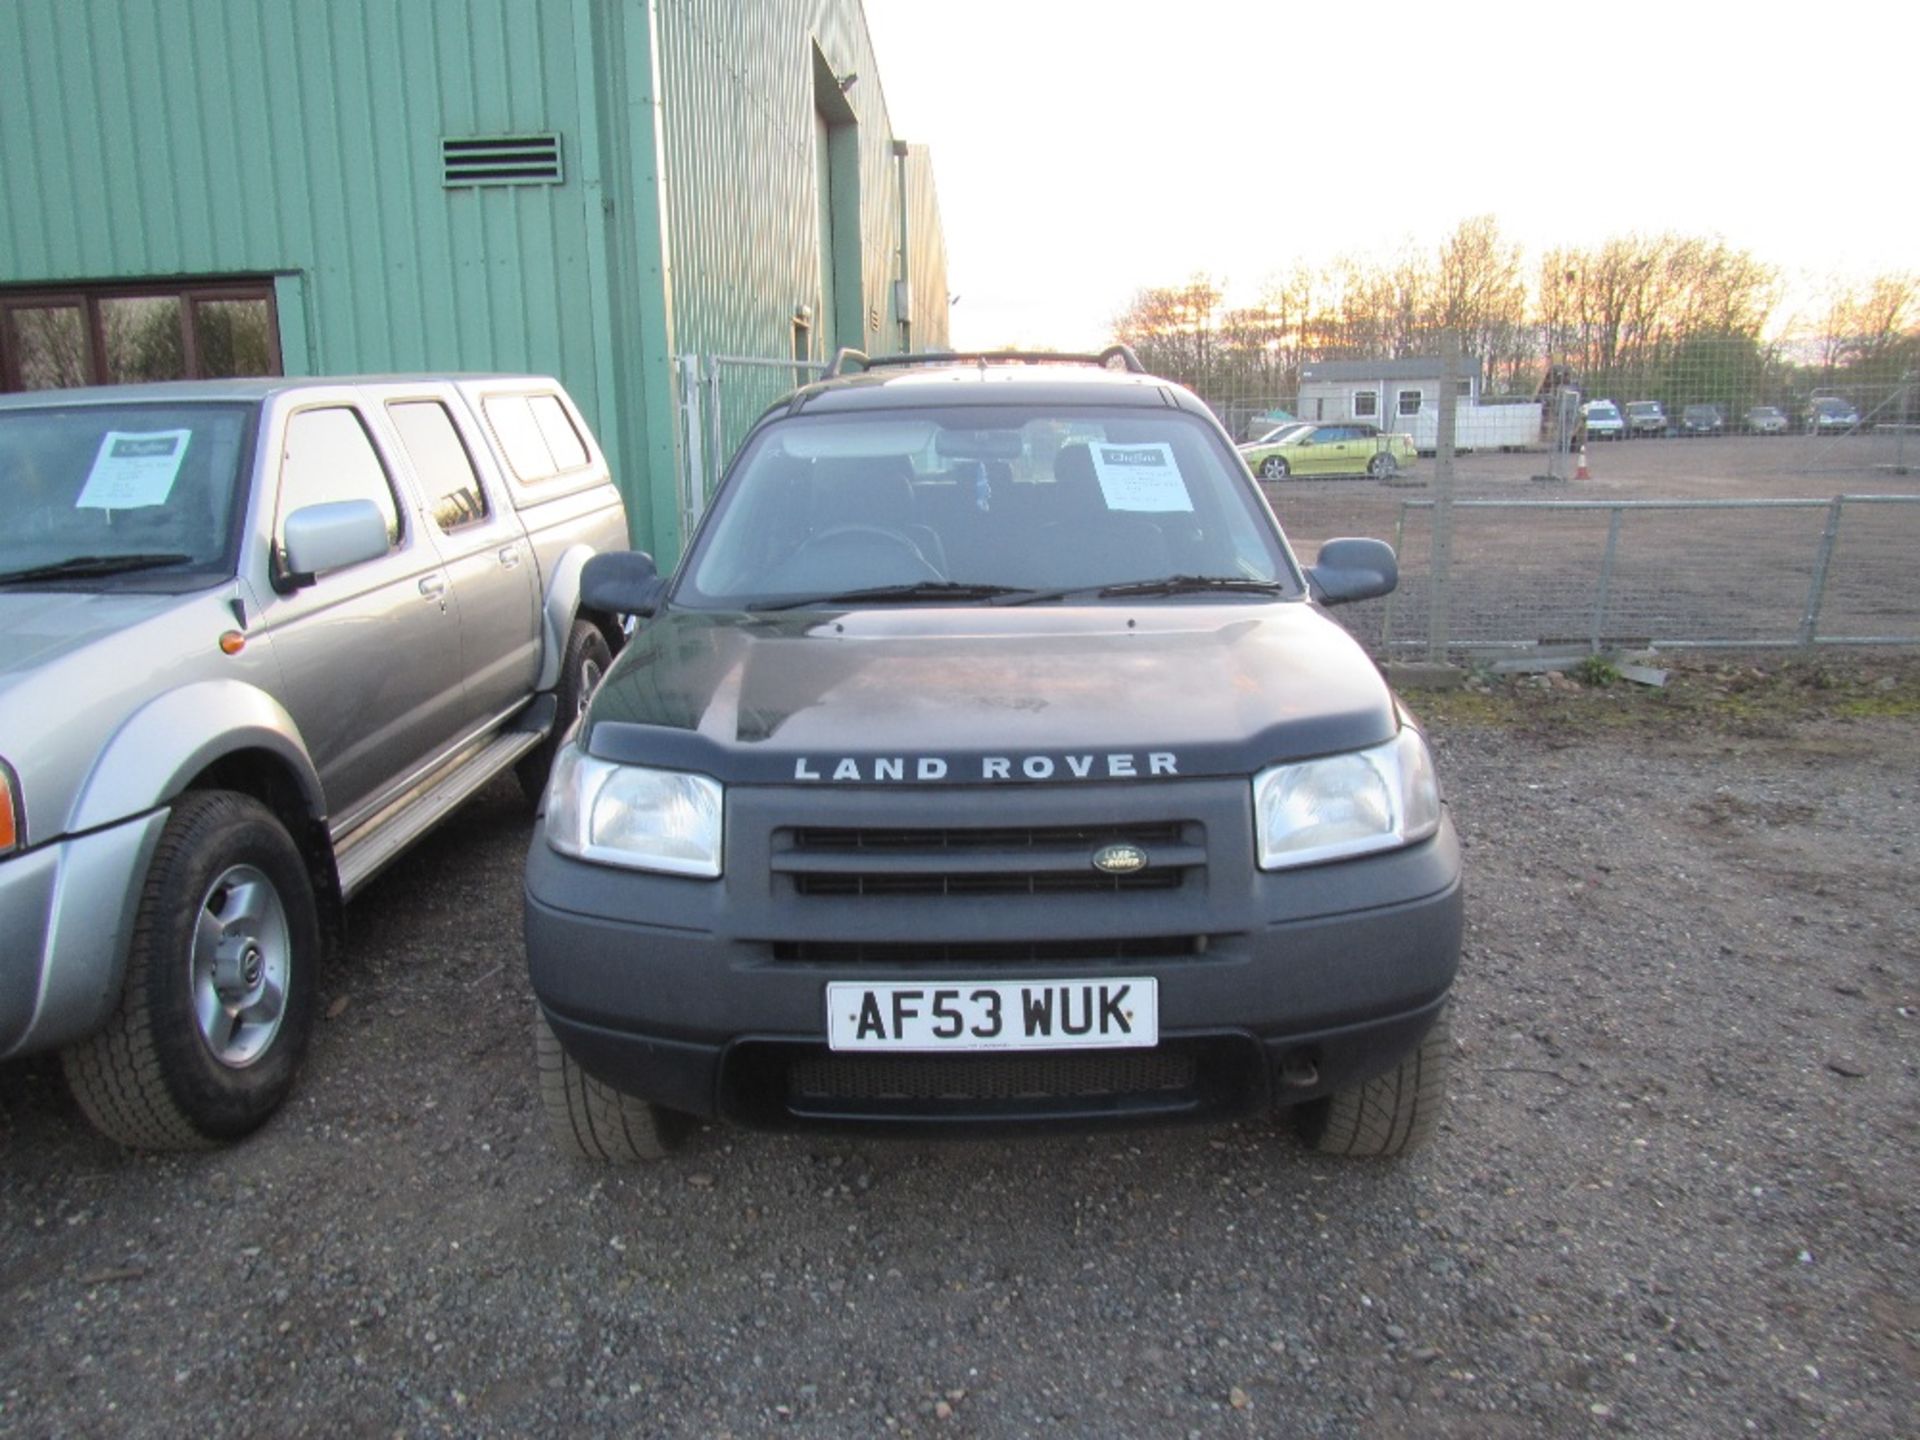 2003 Land Rover Freelander TD4 3 Door. Black. Mileage: 151,236. Reg. No. AF53 WUK - Image 2 of 5